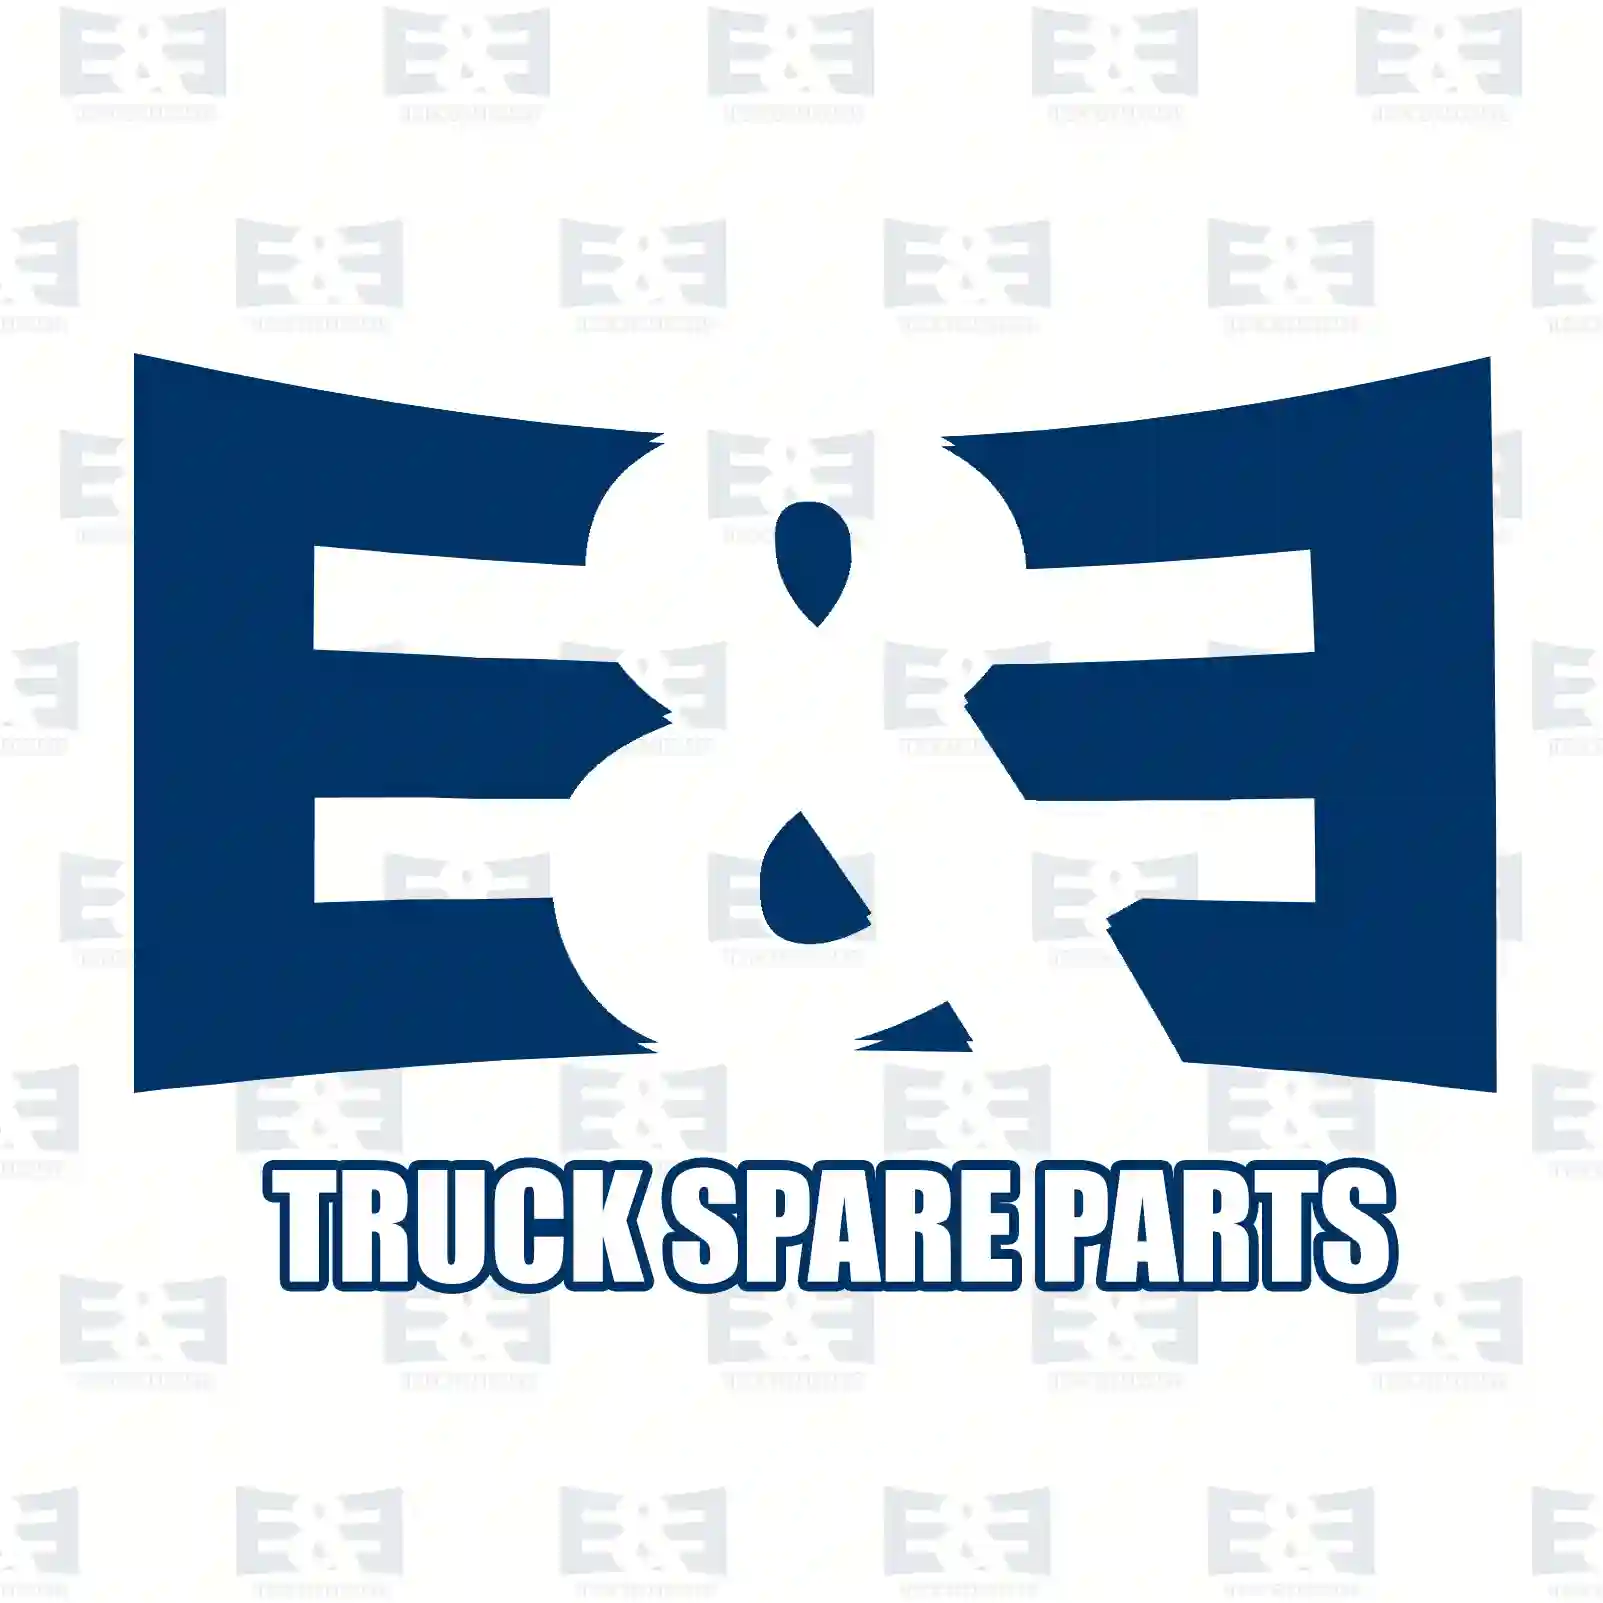 Brake drum, 2E2293981, 42037578, , , , , , ||  2E2293981 E&E Truck Spare Parts | Truck Spare Parts, Auotomotive Spare Parts Brake drum, 2E2293981, 42037578, , , , , , ||  2E2293981 E&E Truck Spare Parts | Truck Spare Parts, Auotomotive Spare Parts